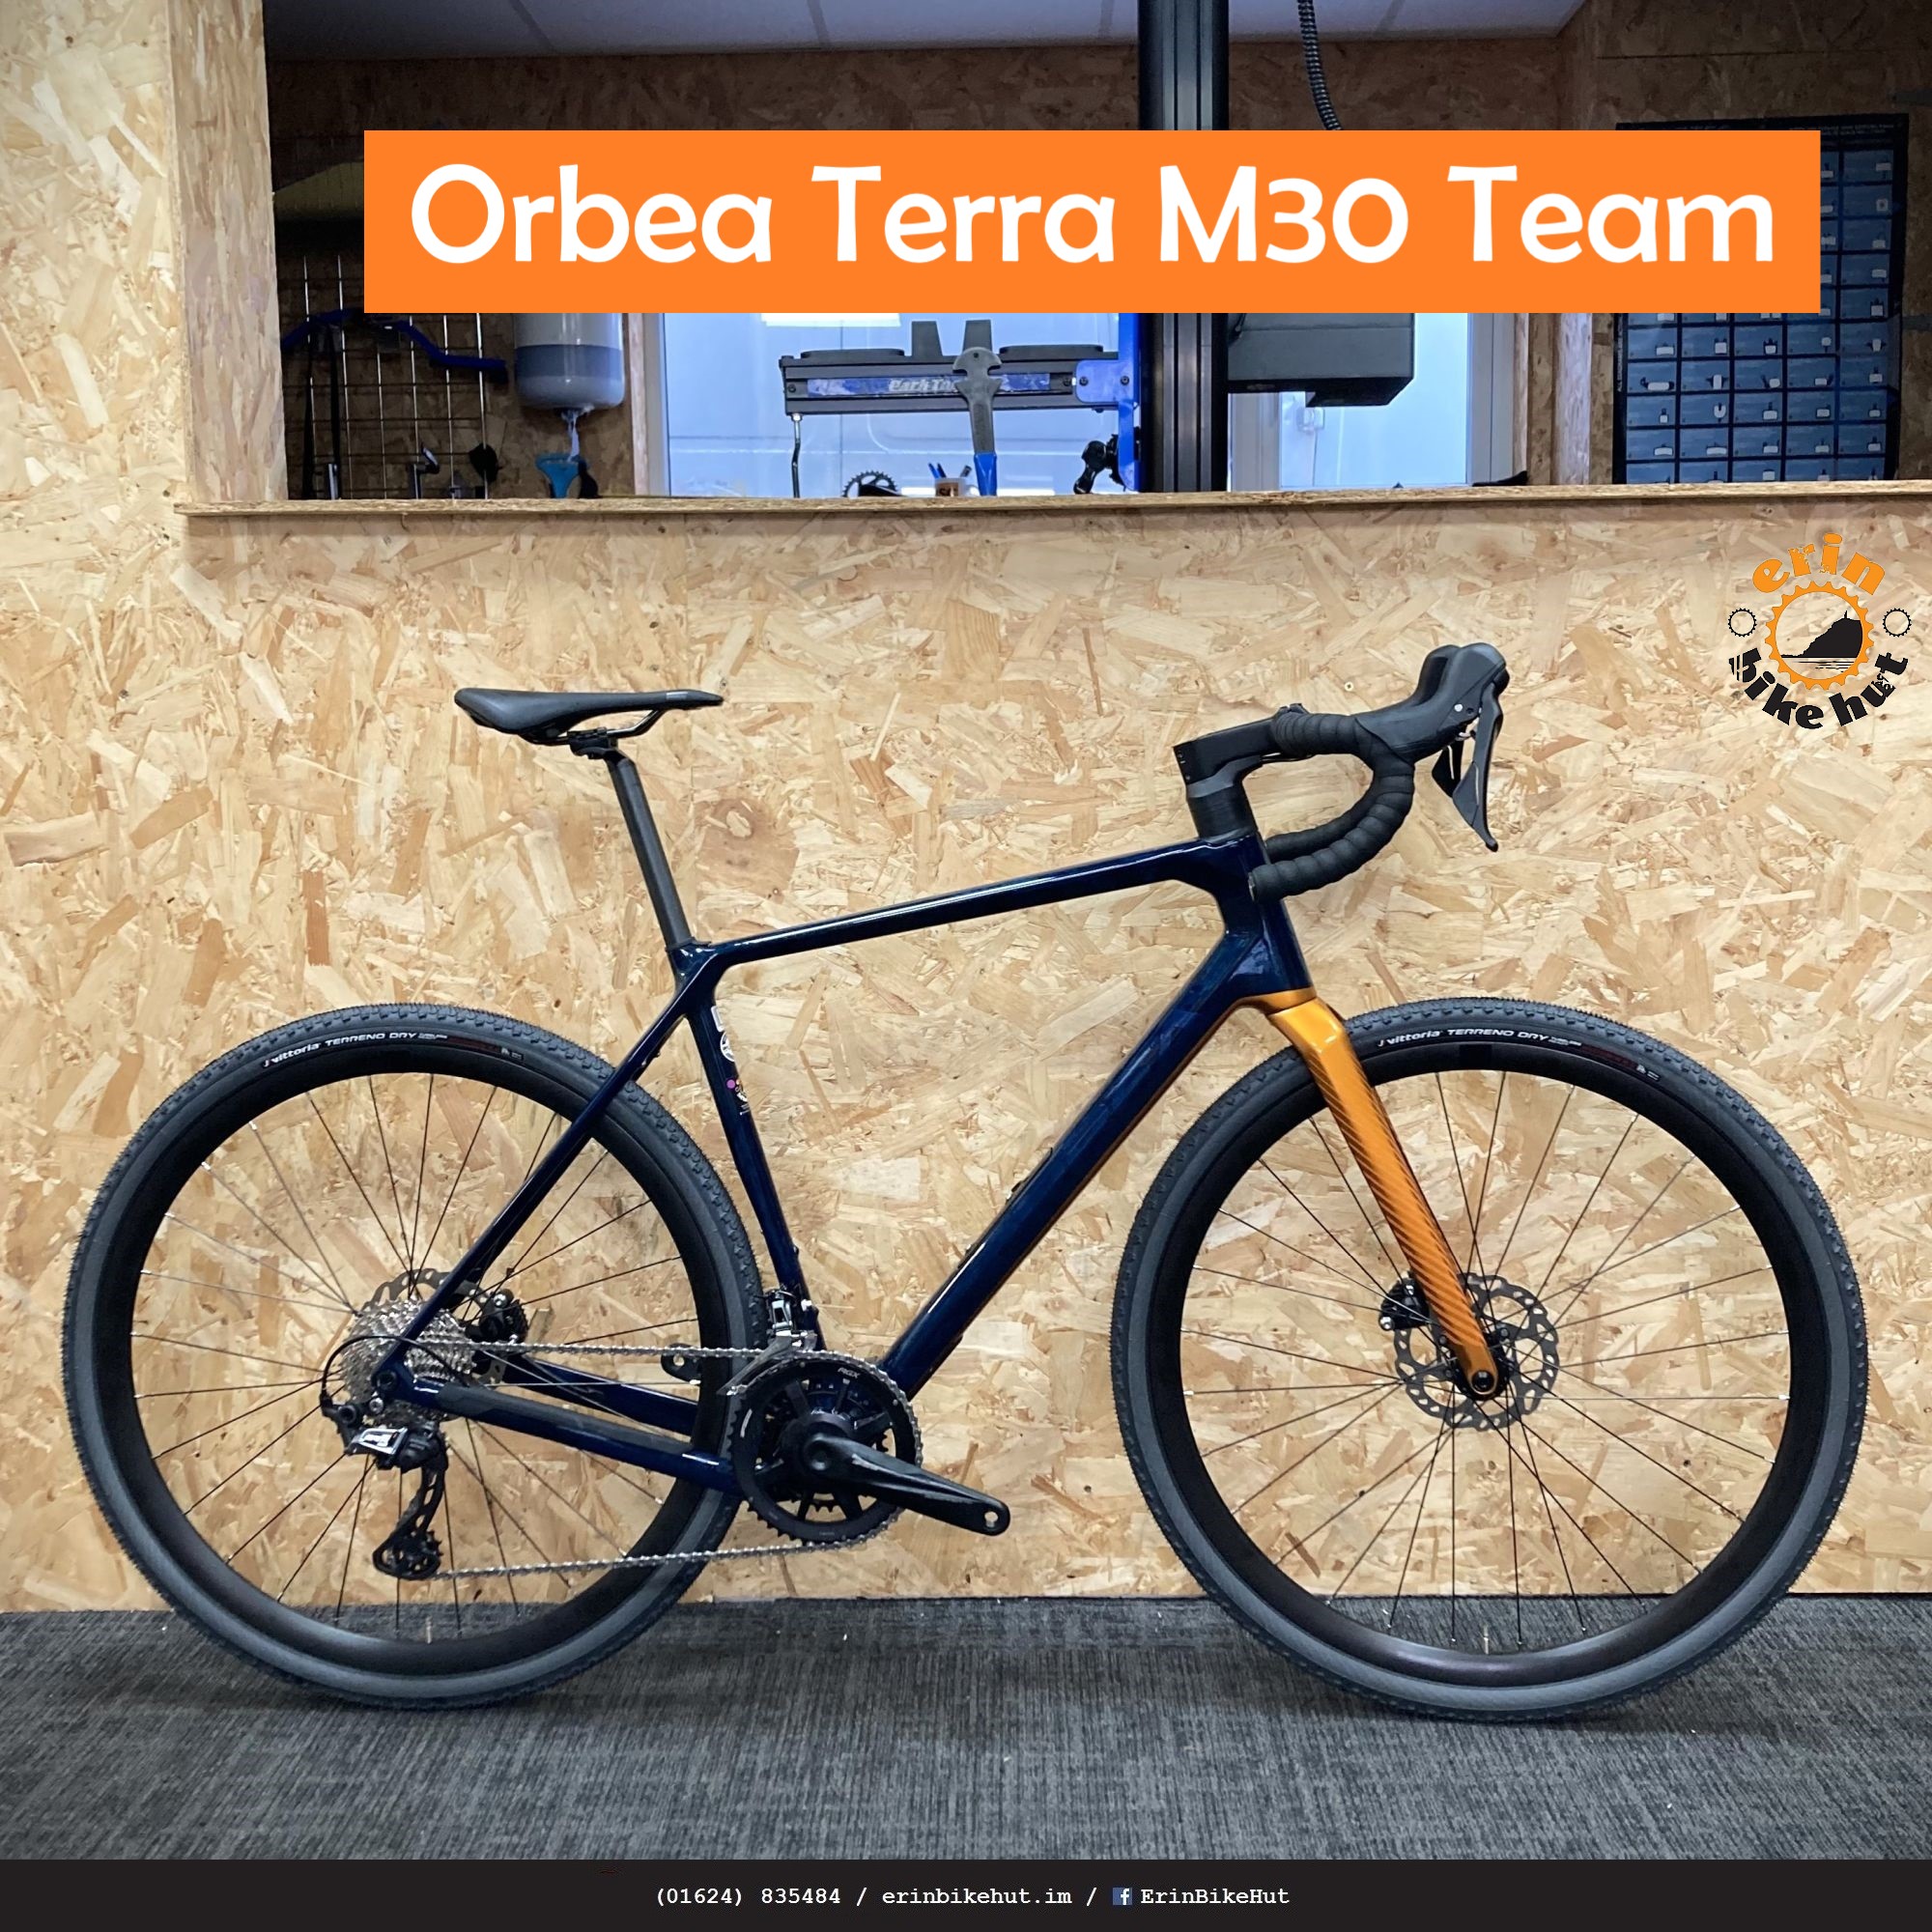 Orbea Terra M30 Team